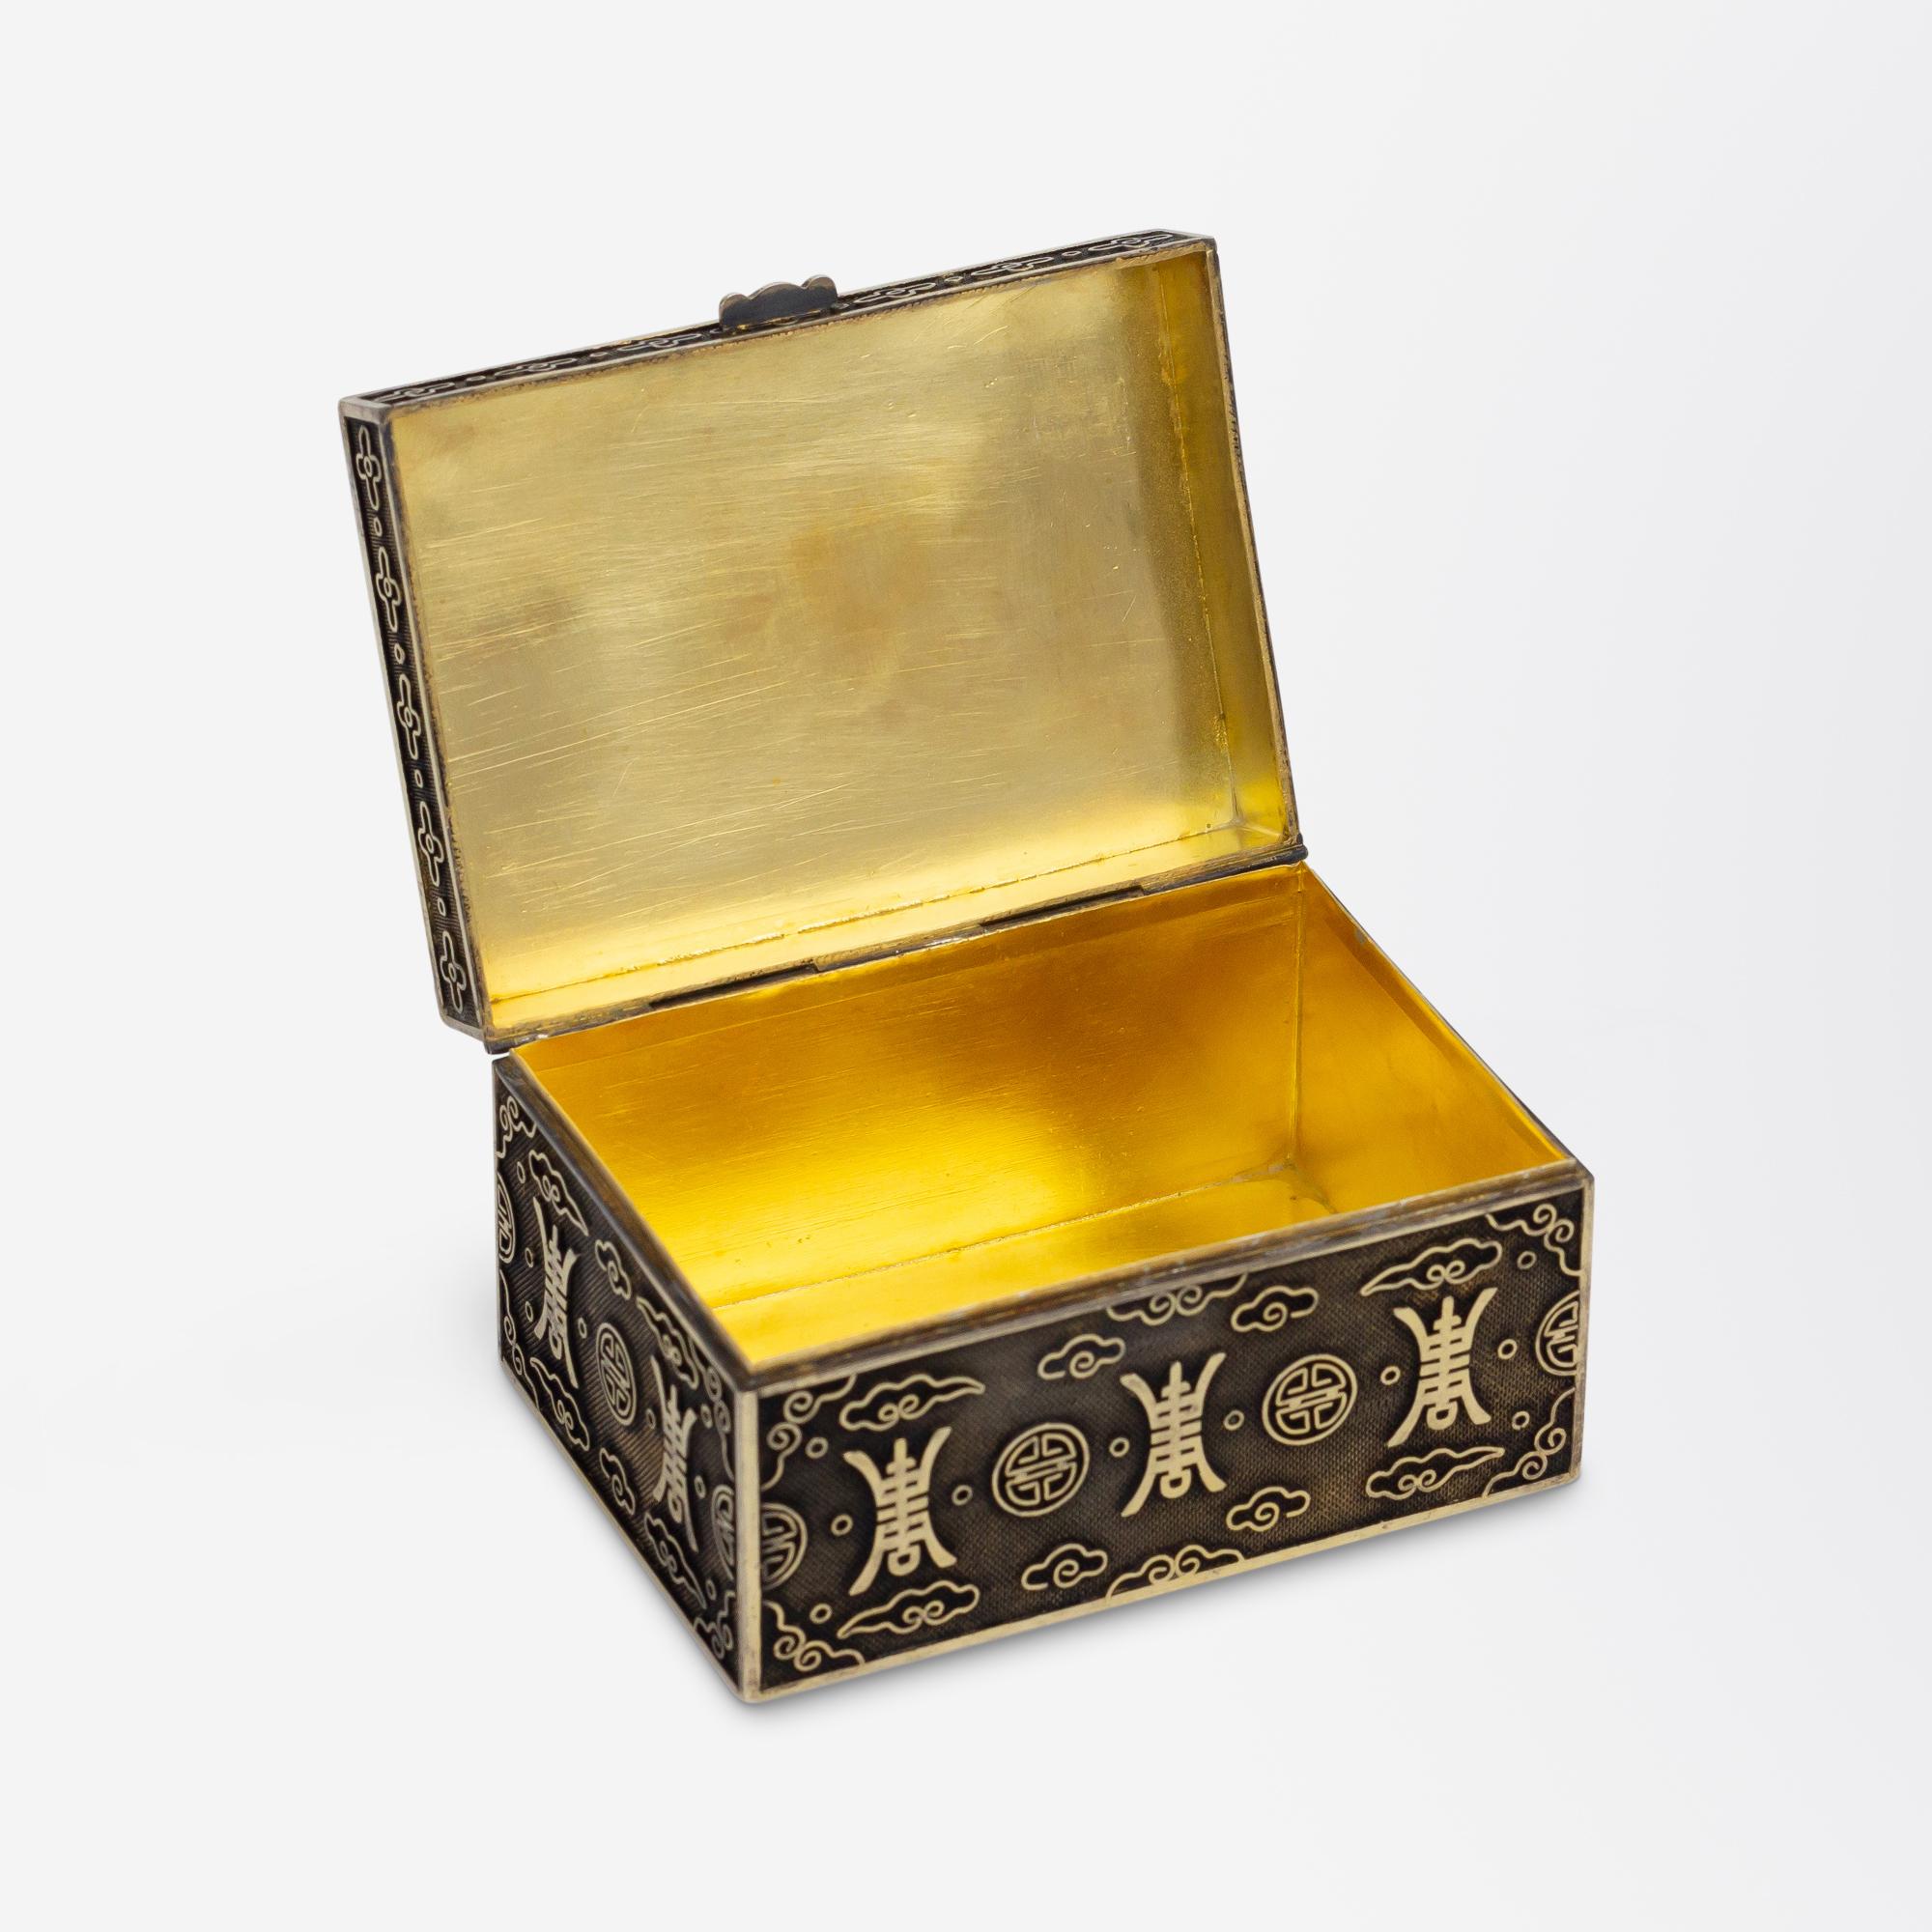 Cette petite boîte en argent a été fabriquée en Chine et est ornée d'une plaque en jade sculpté sur le couvercle. La boîte rectangulaire est simplement marquée 